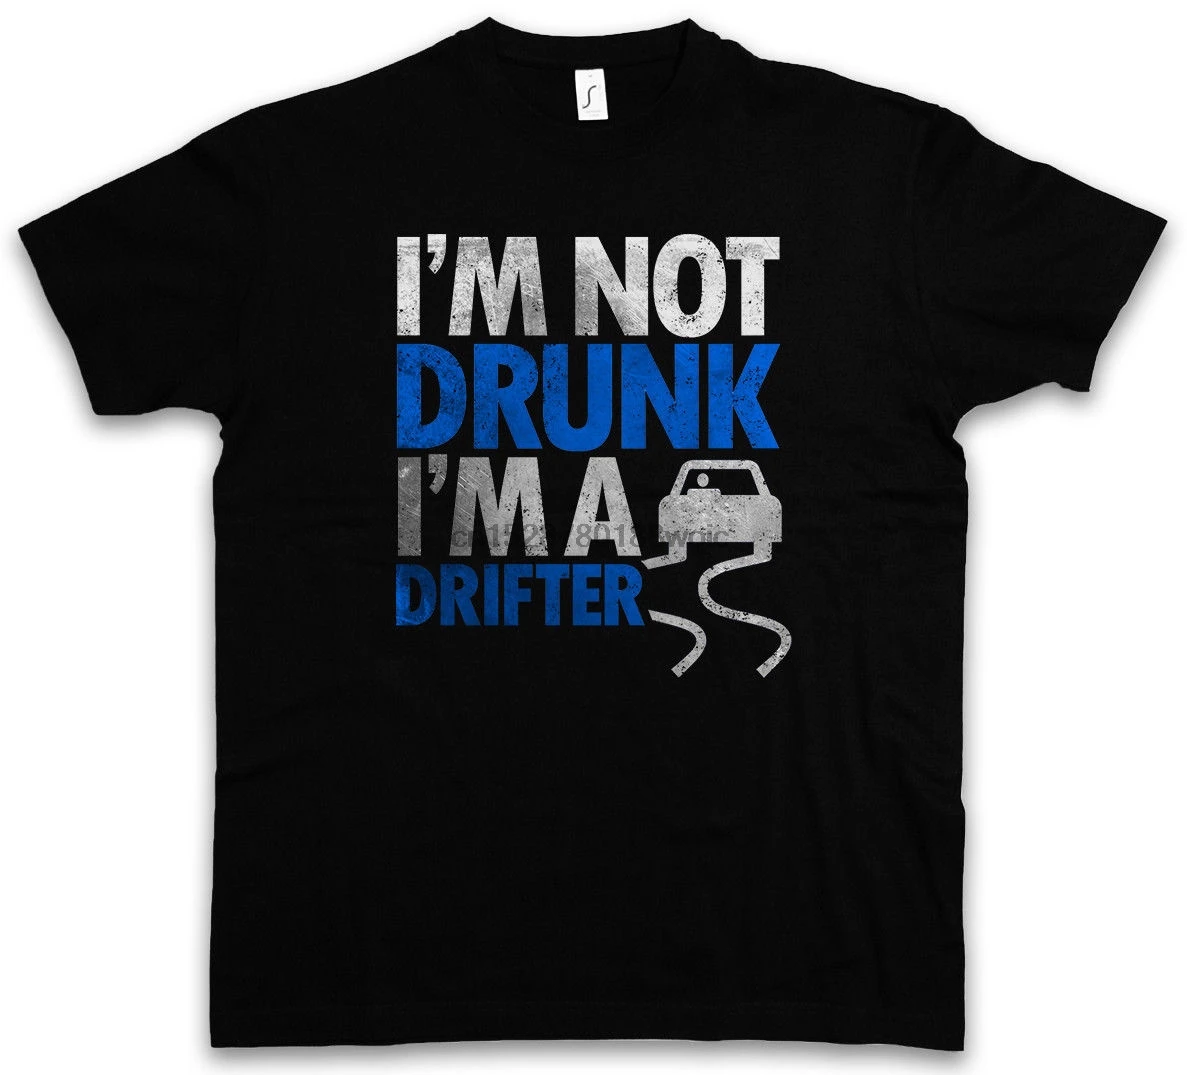 Im not drunk футболка. I M not drunk футболка. Trust me i am Drifter футболка. Im not drunk футболка твое. Im drunk